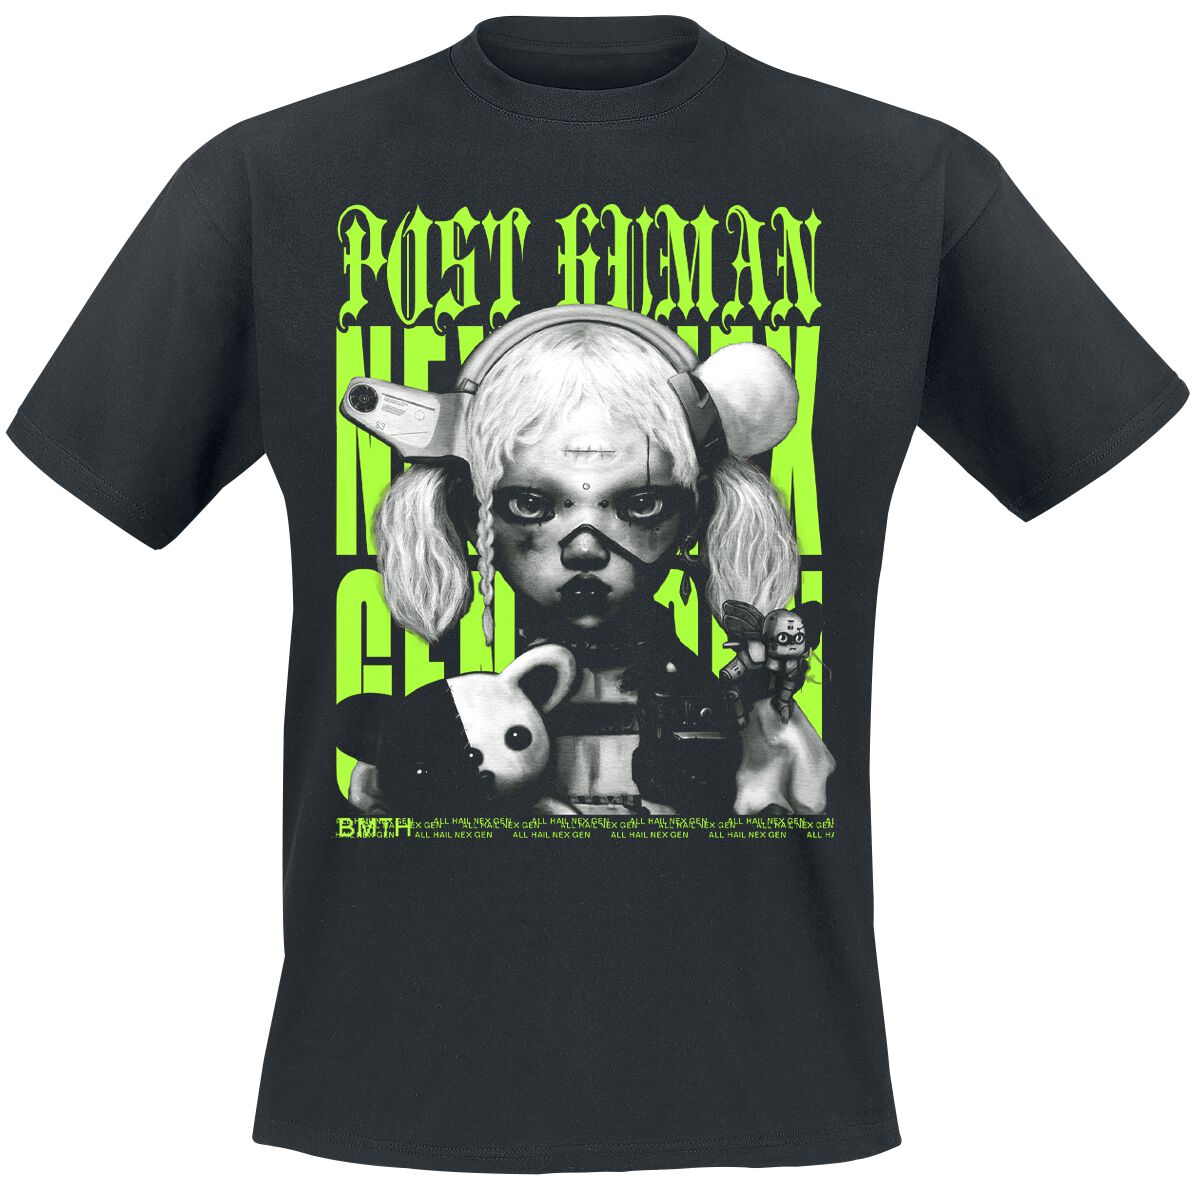 Bring Me The Horizon T-Shirt - Green Next Gen - S bis M - für Männer - Größe M - schwarz  - Lizenziertes Merchandise!